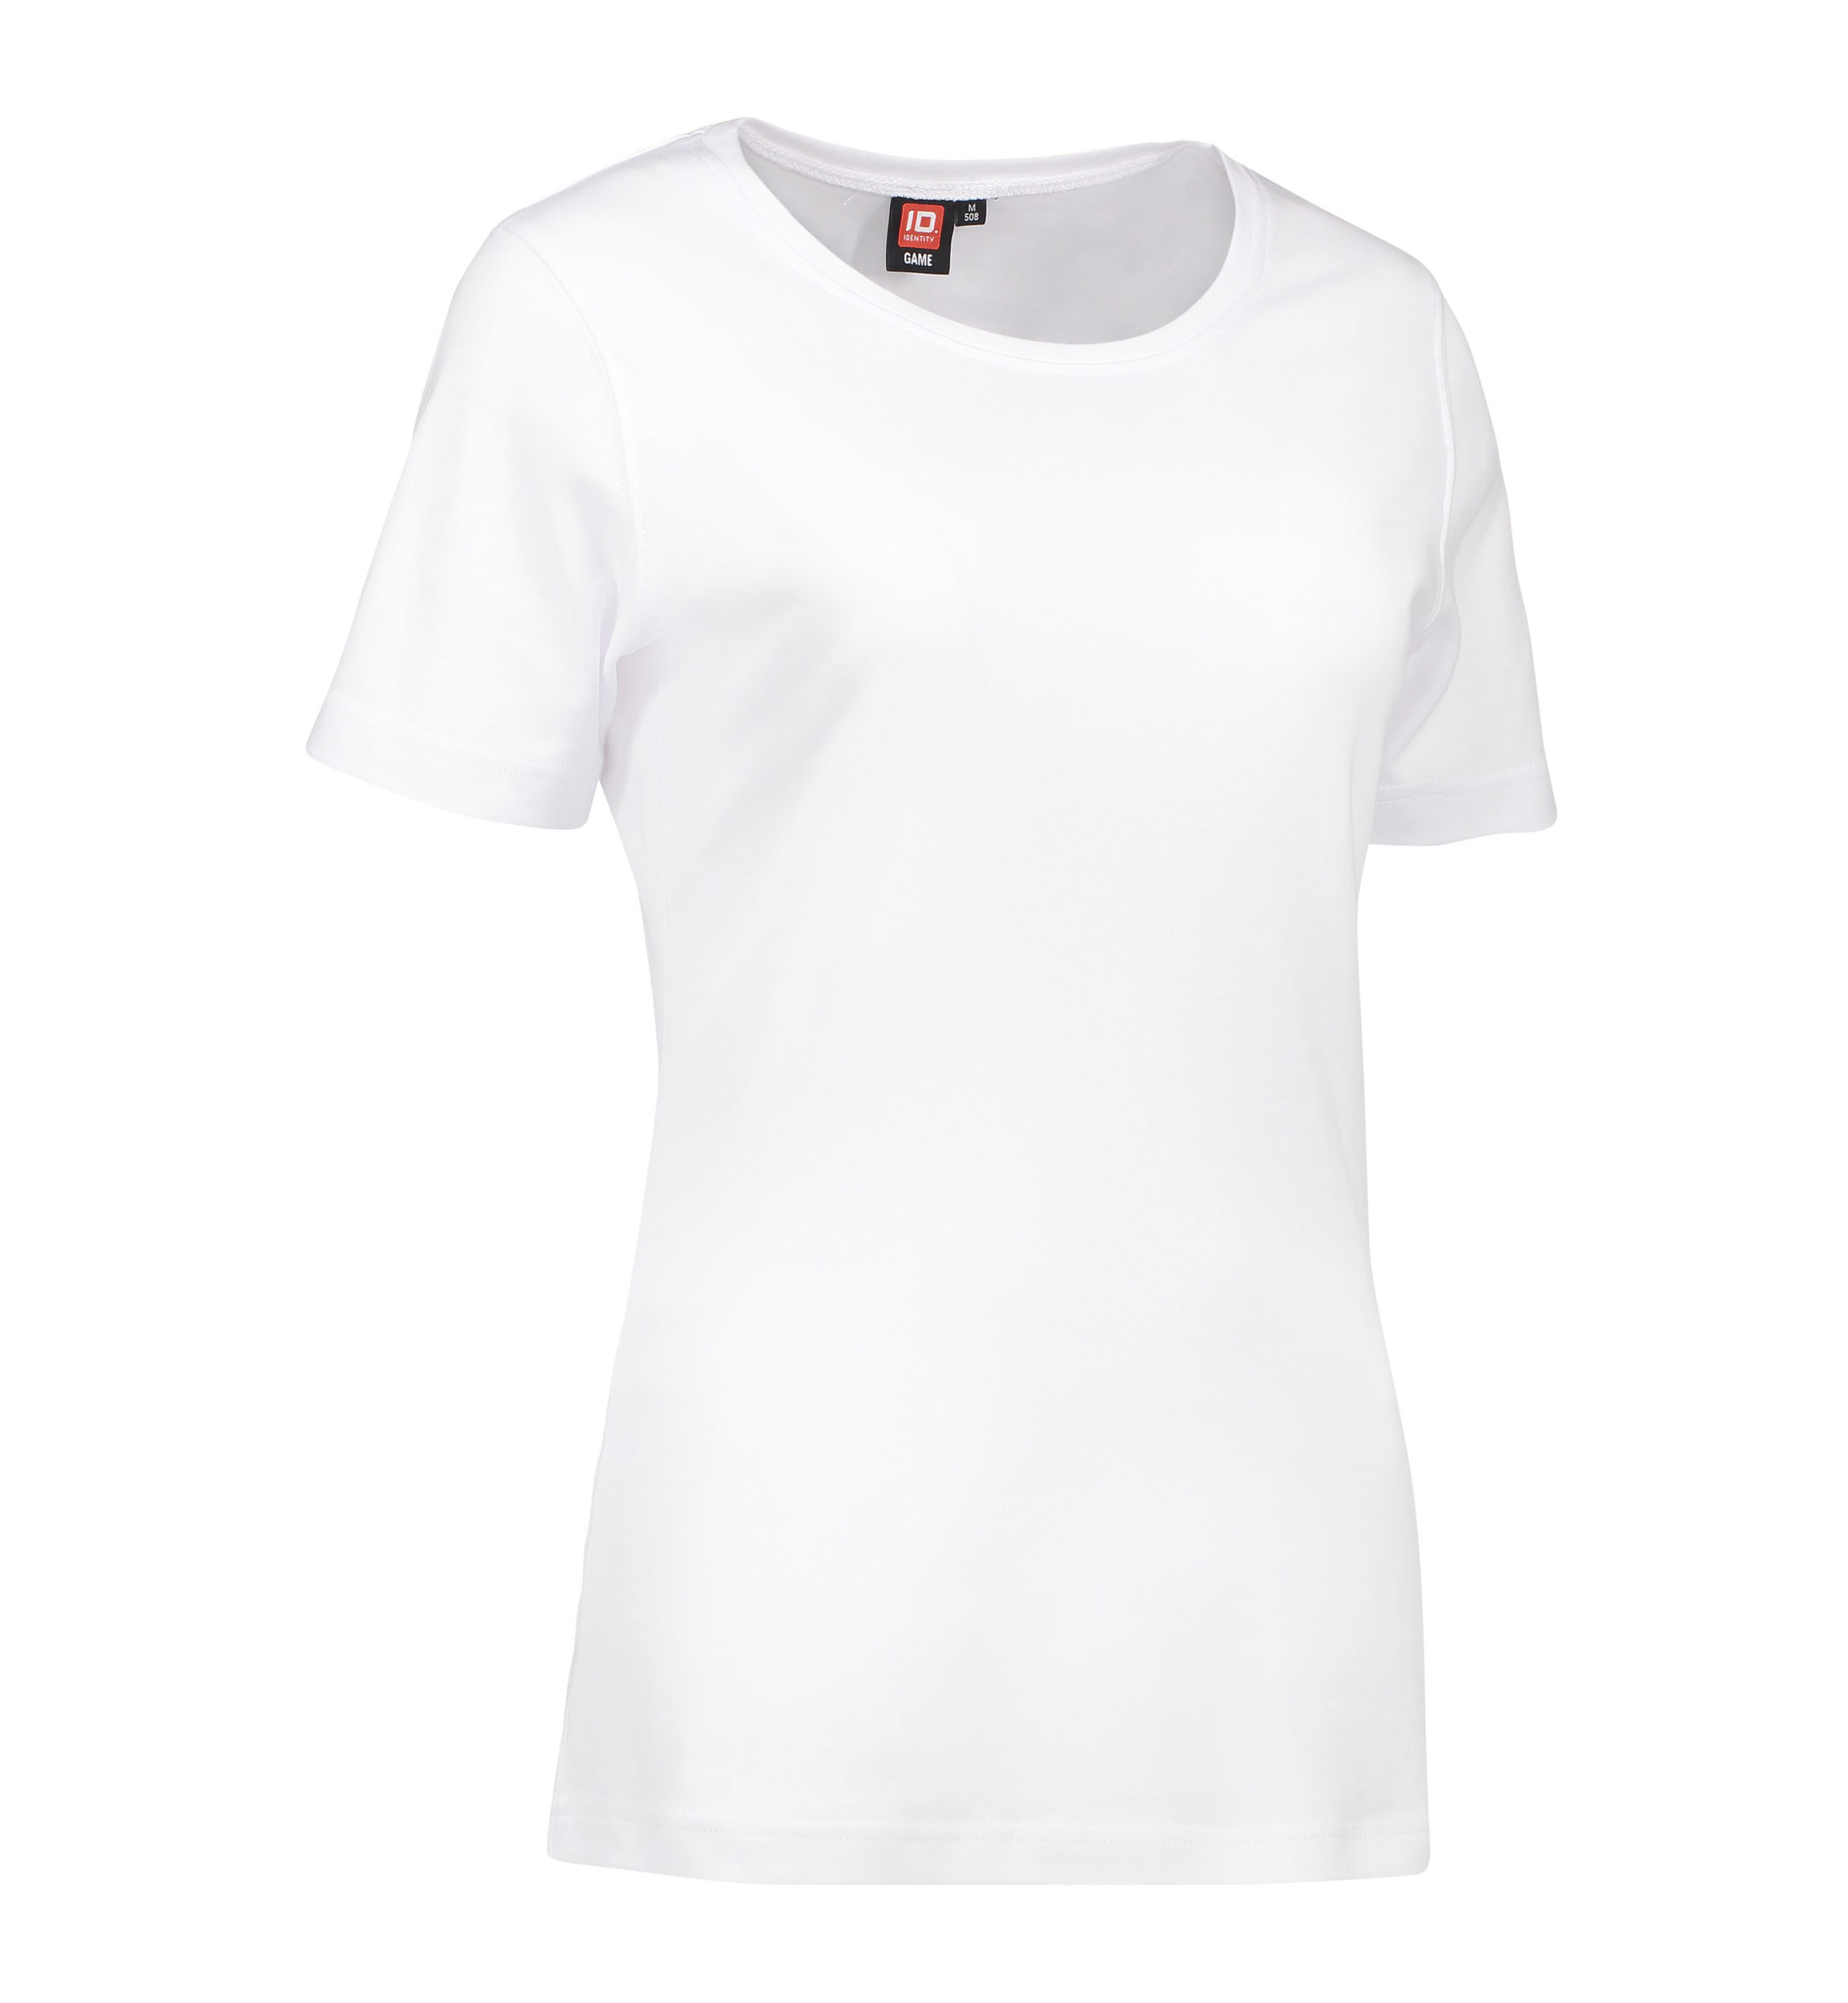 Billede af Dame t-shirt med rund hals i hvid - L hos Sygeplejebutikken.dk